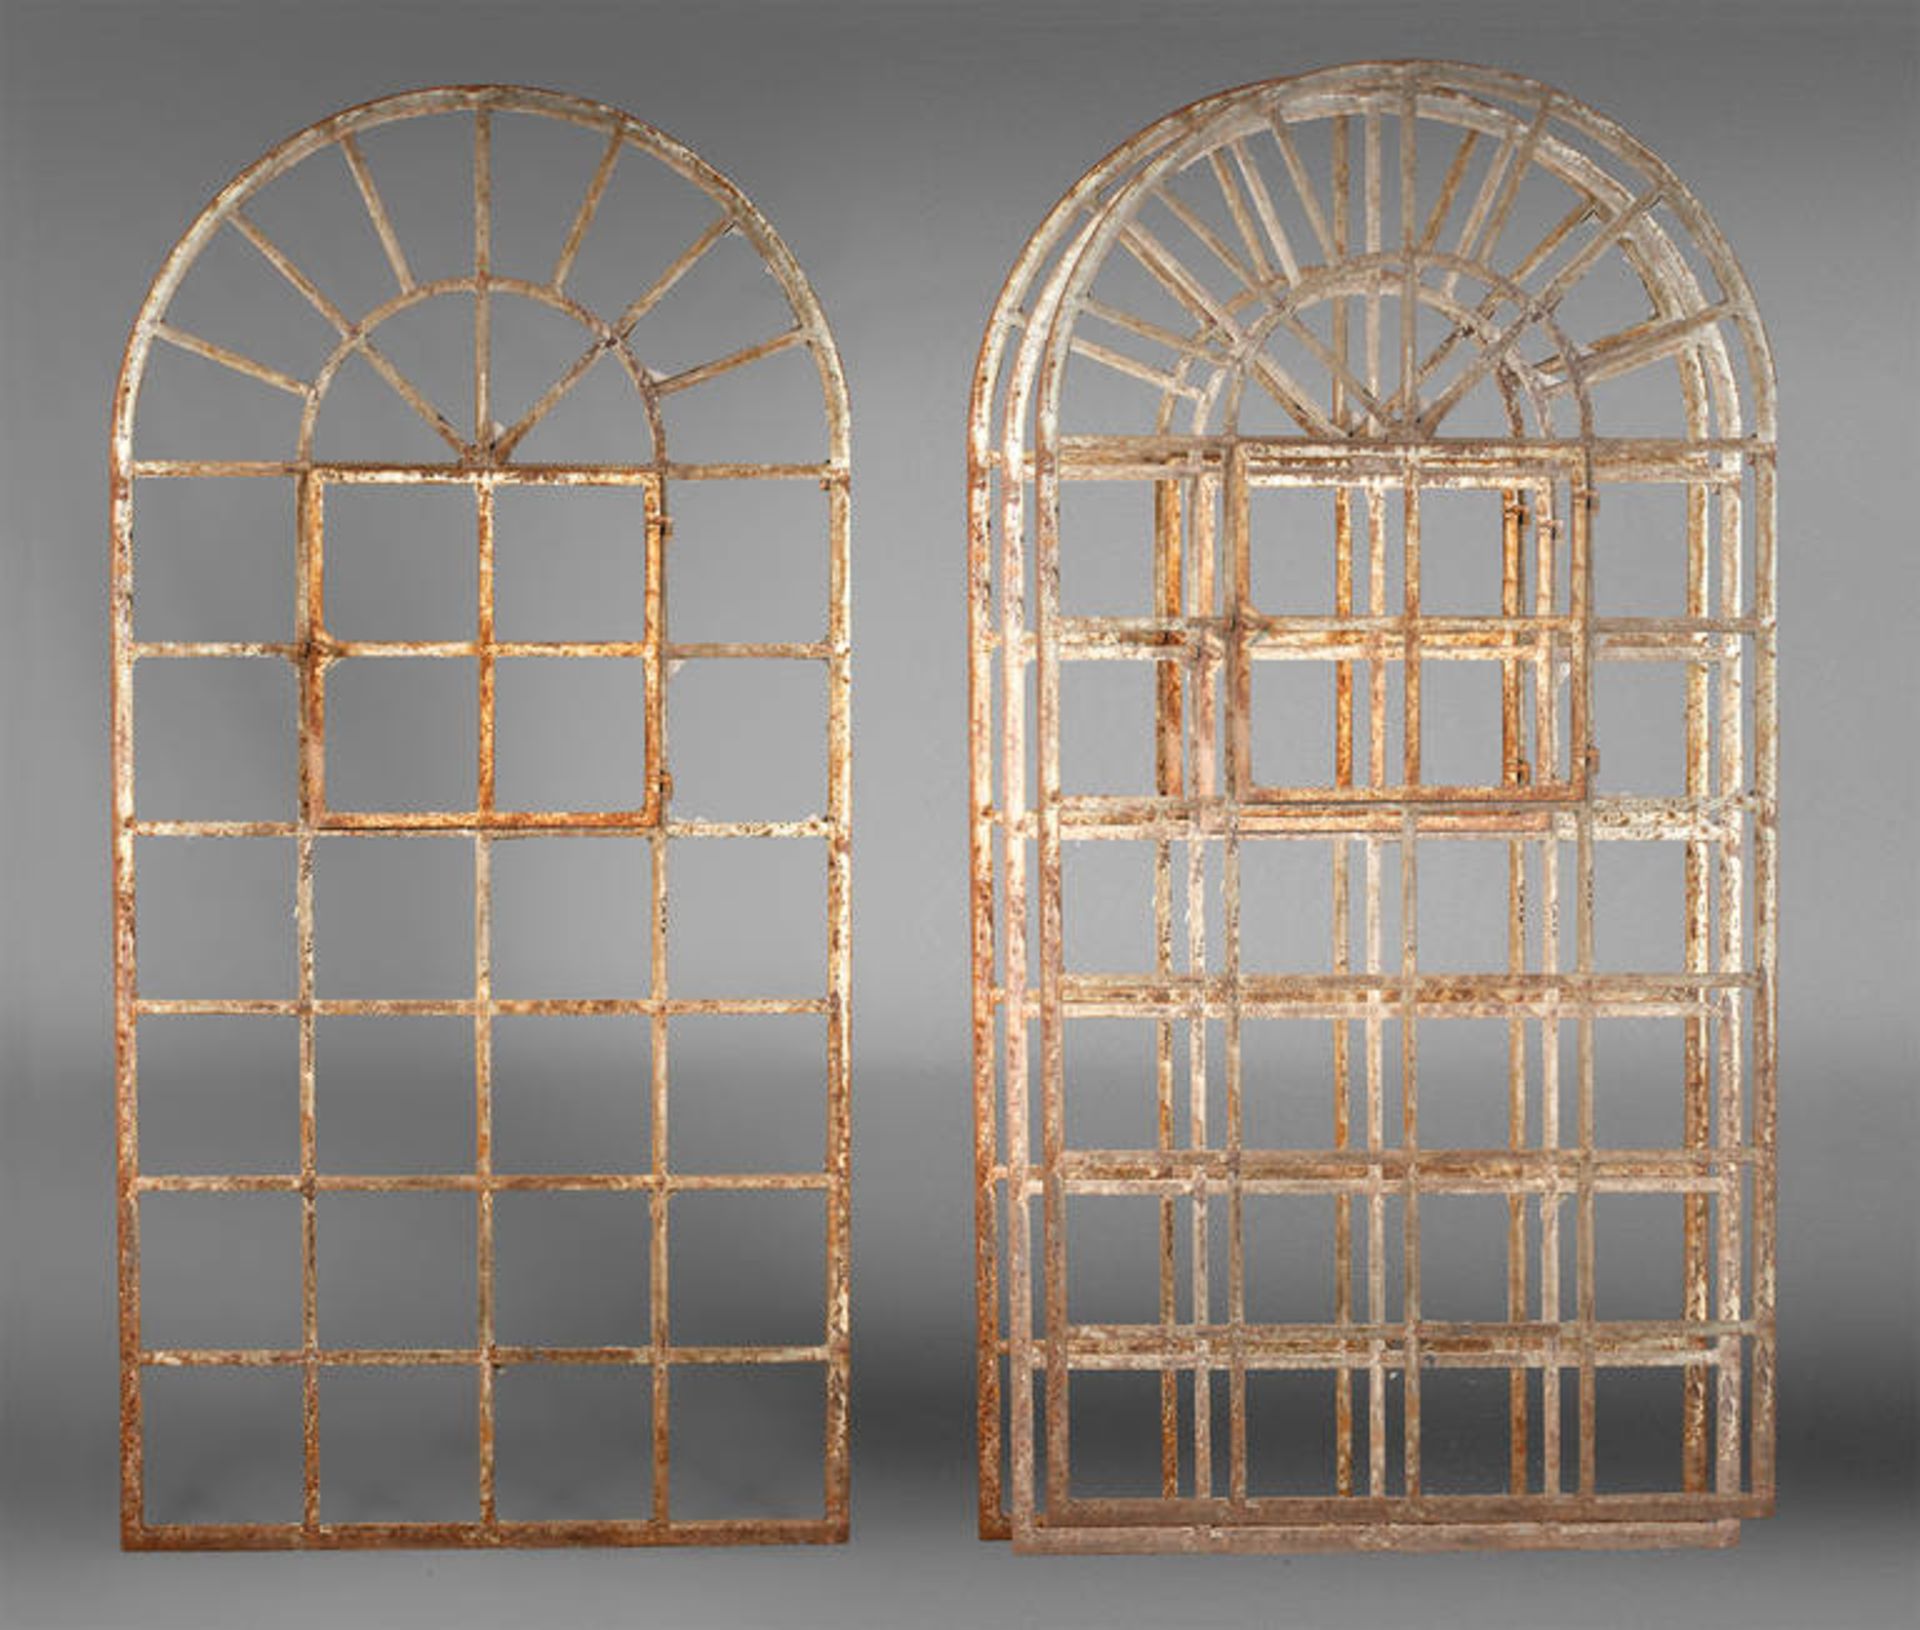 Vier Rundbogenfenster
Gusseisen, um 1890, Fenster mit quadratischen Scheiben, einem Öffnungsflügel